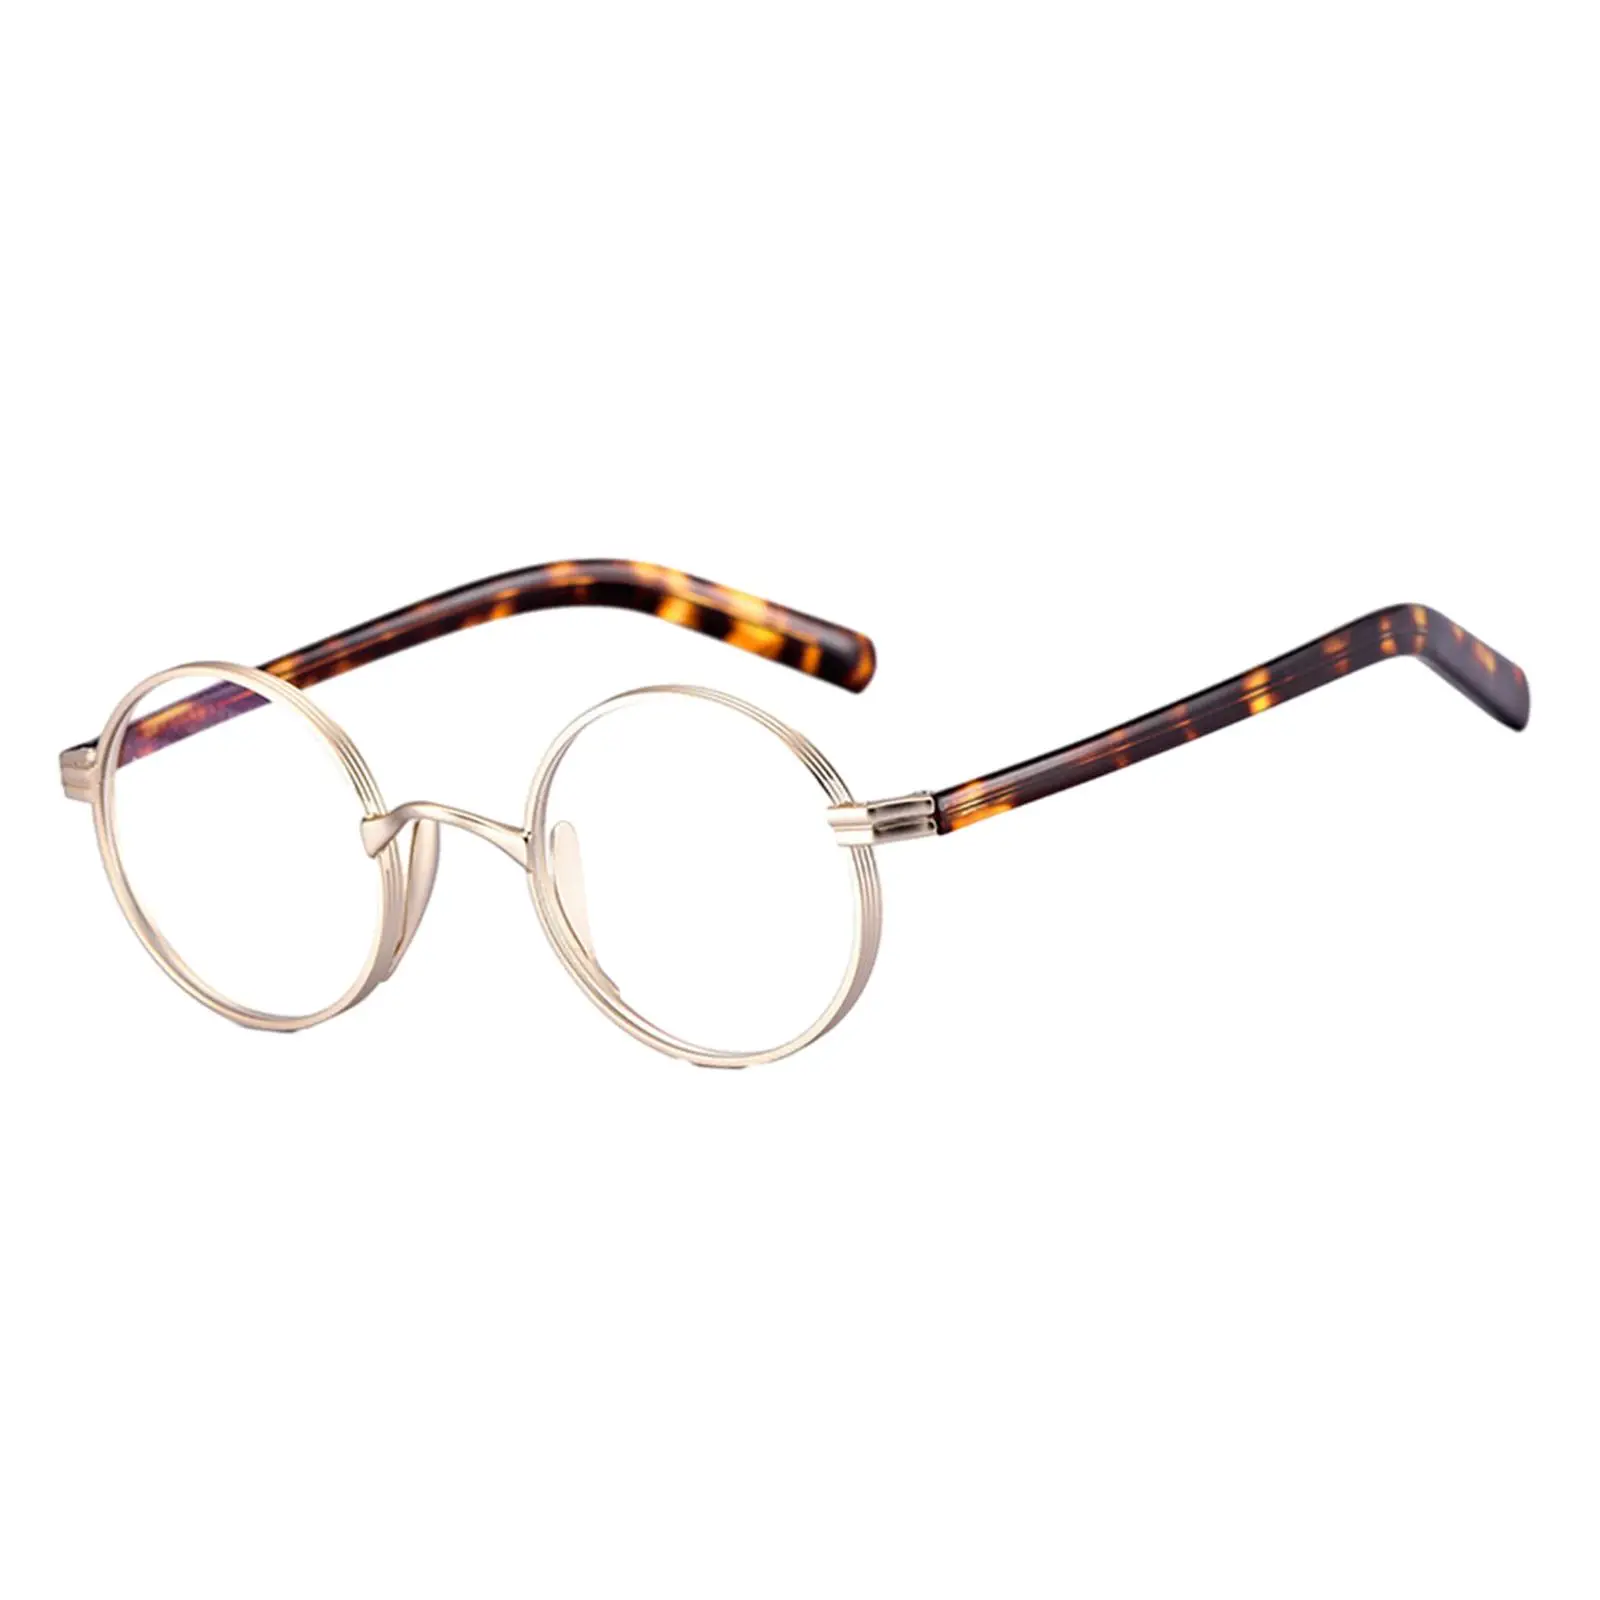 Glasses Frames Comfortable to Wear Full Rim Classical Retro Ultralight for Men Women Round Eyeglasses Frames Eyeglass Frame